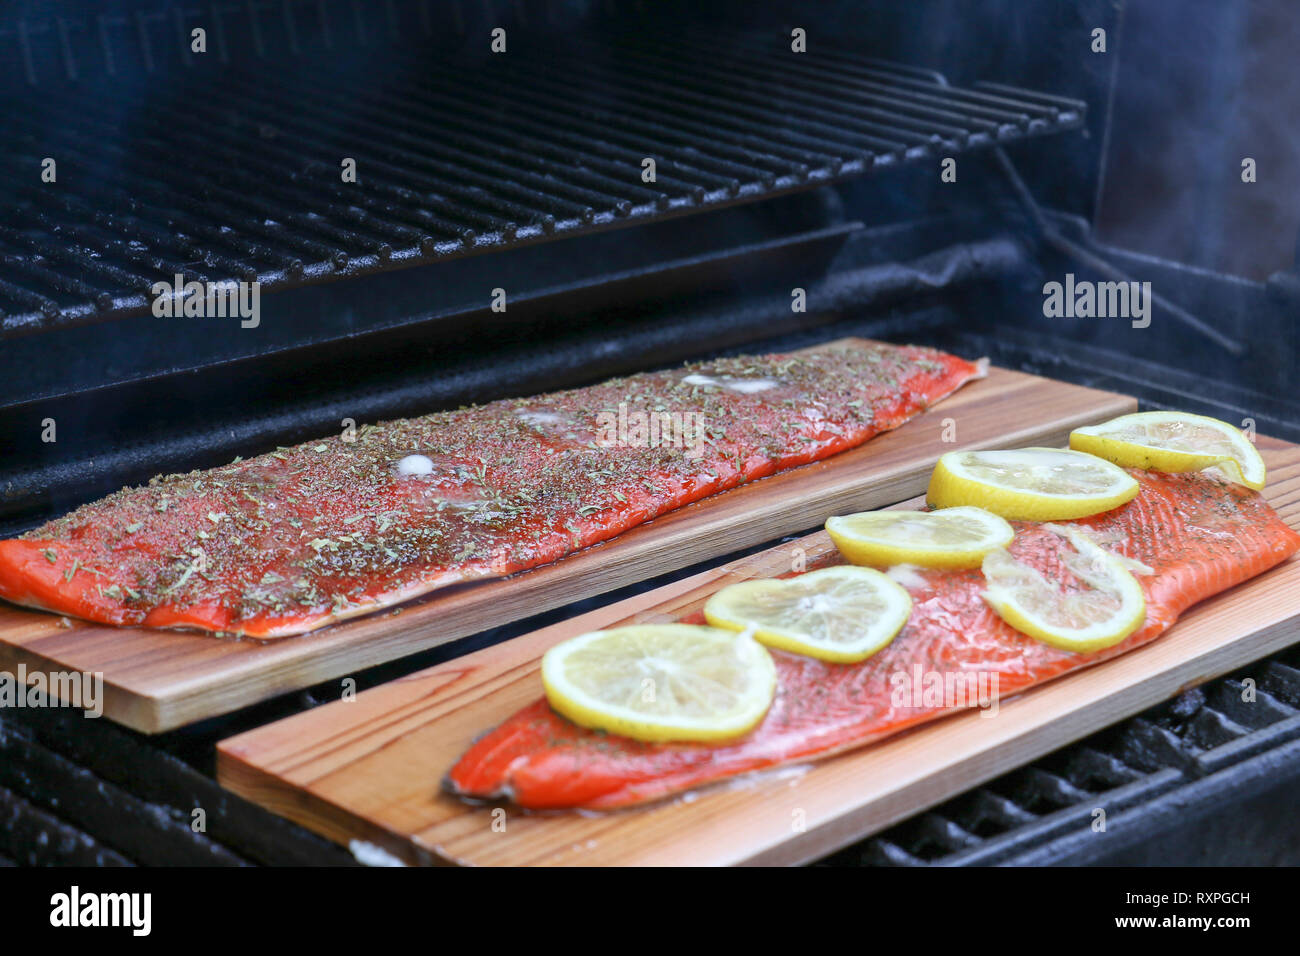 Un filet de saumon directement grillé sur le barbecue à l'aide d'une planche de cèdre injectera une merveilleuse saveur fumée Banque D'Images